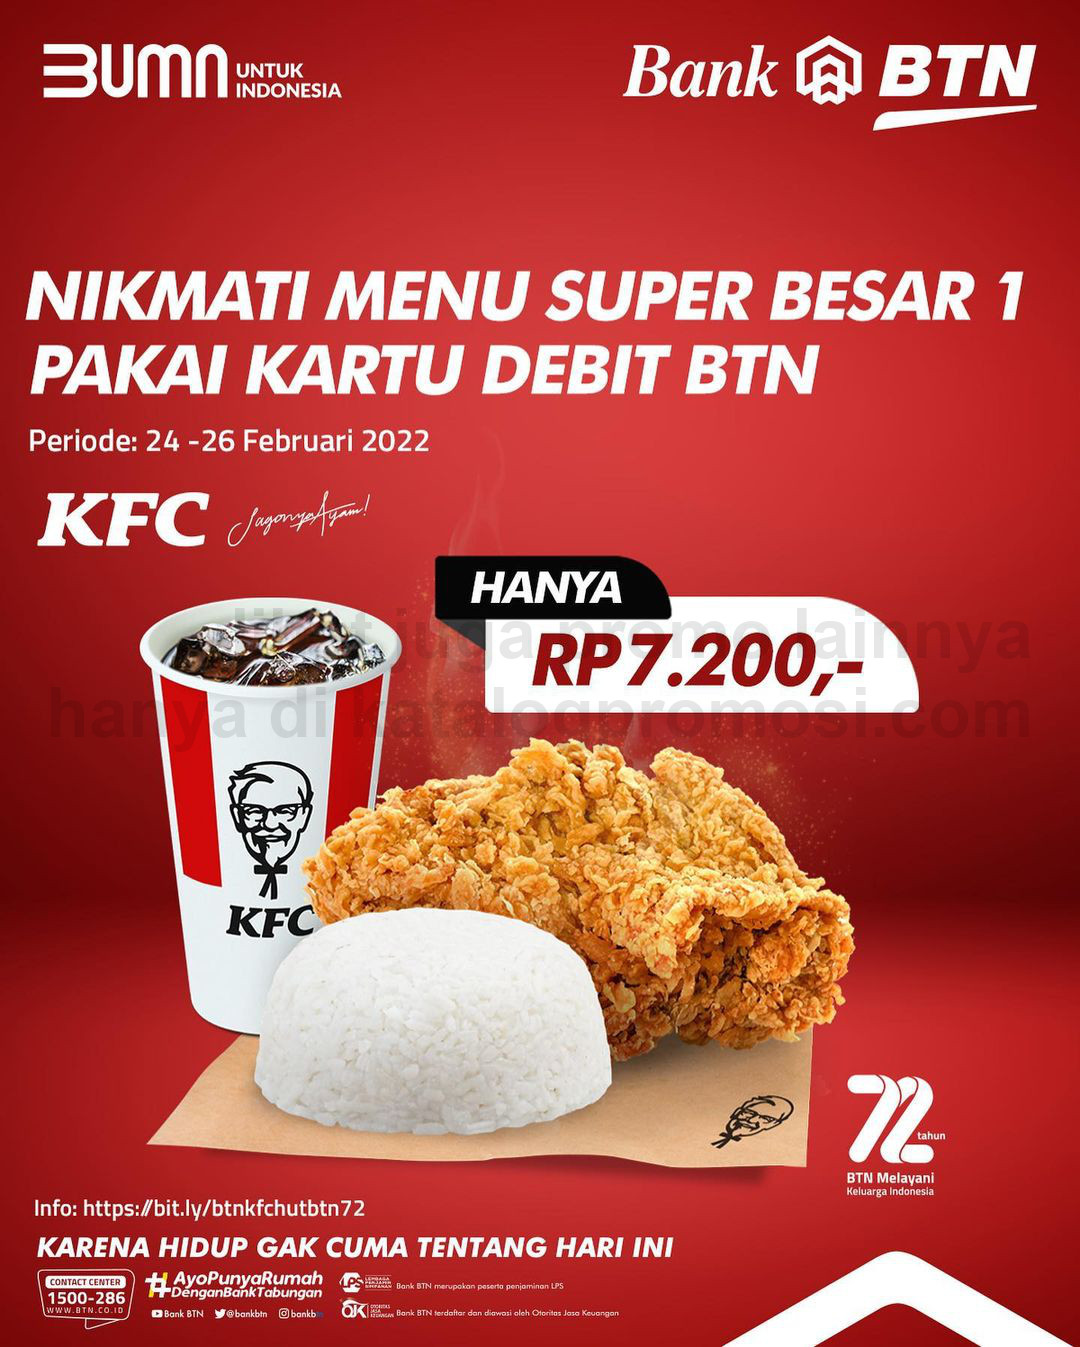 Promo KFC HUT BTN 72 - Beli PAKET Super Besar 1 hanya Rp. 7.200 dengan Kartu Debit BTN Visa Dan GPN 